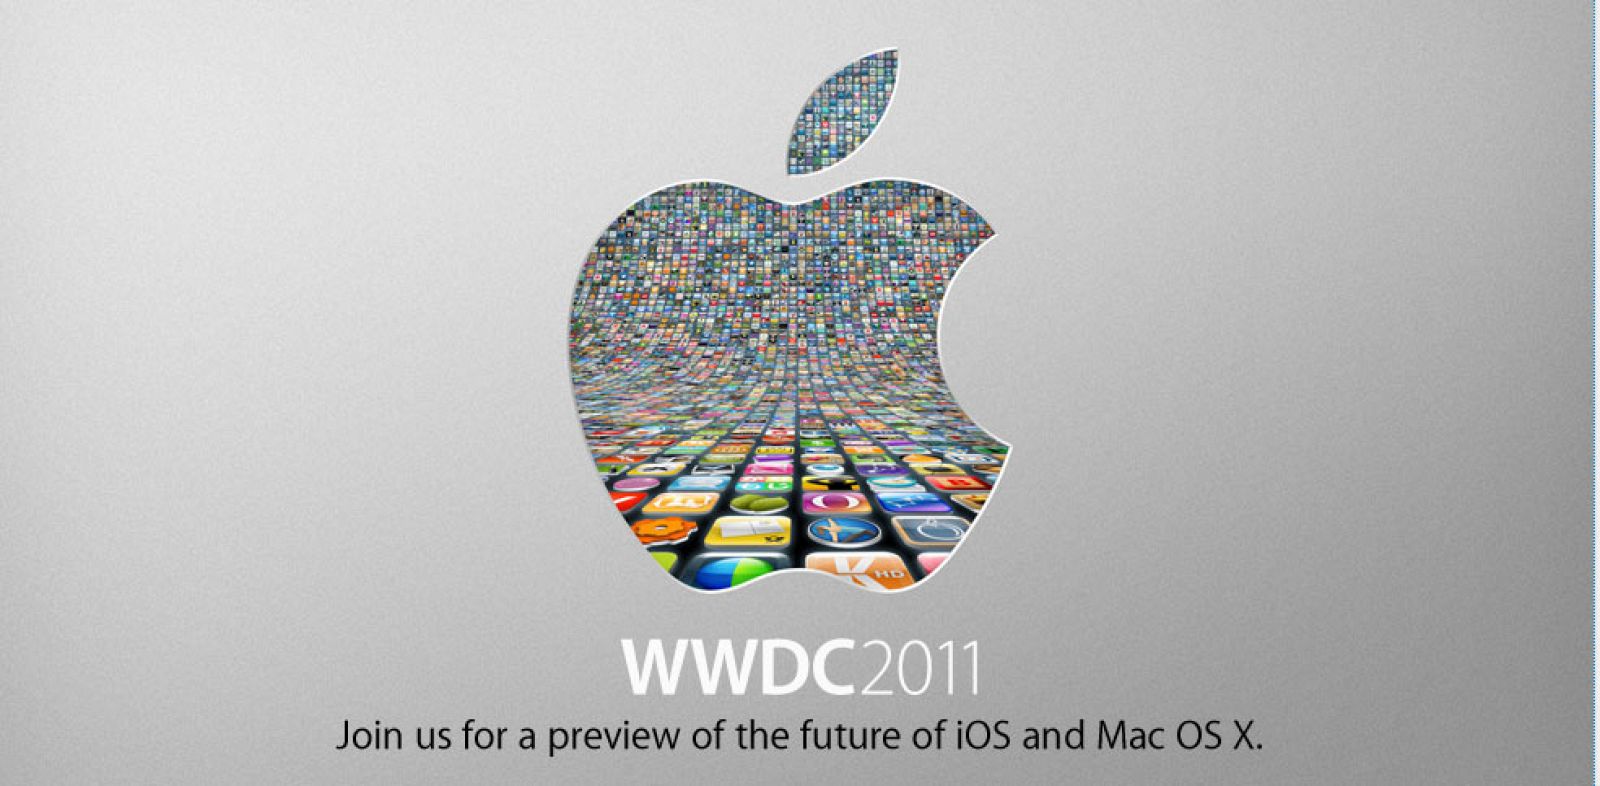 La presentación tendrá lugar en la Conferencia Mundial de Desarrolladores Apple (WWDC, Worldwide Developers Conference) que se celebrará el próximo lunes en San Francisco.